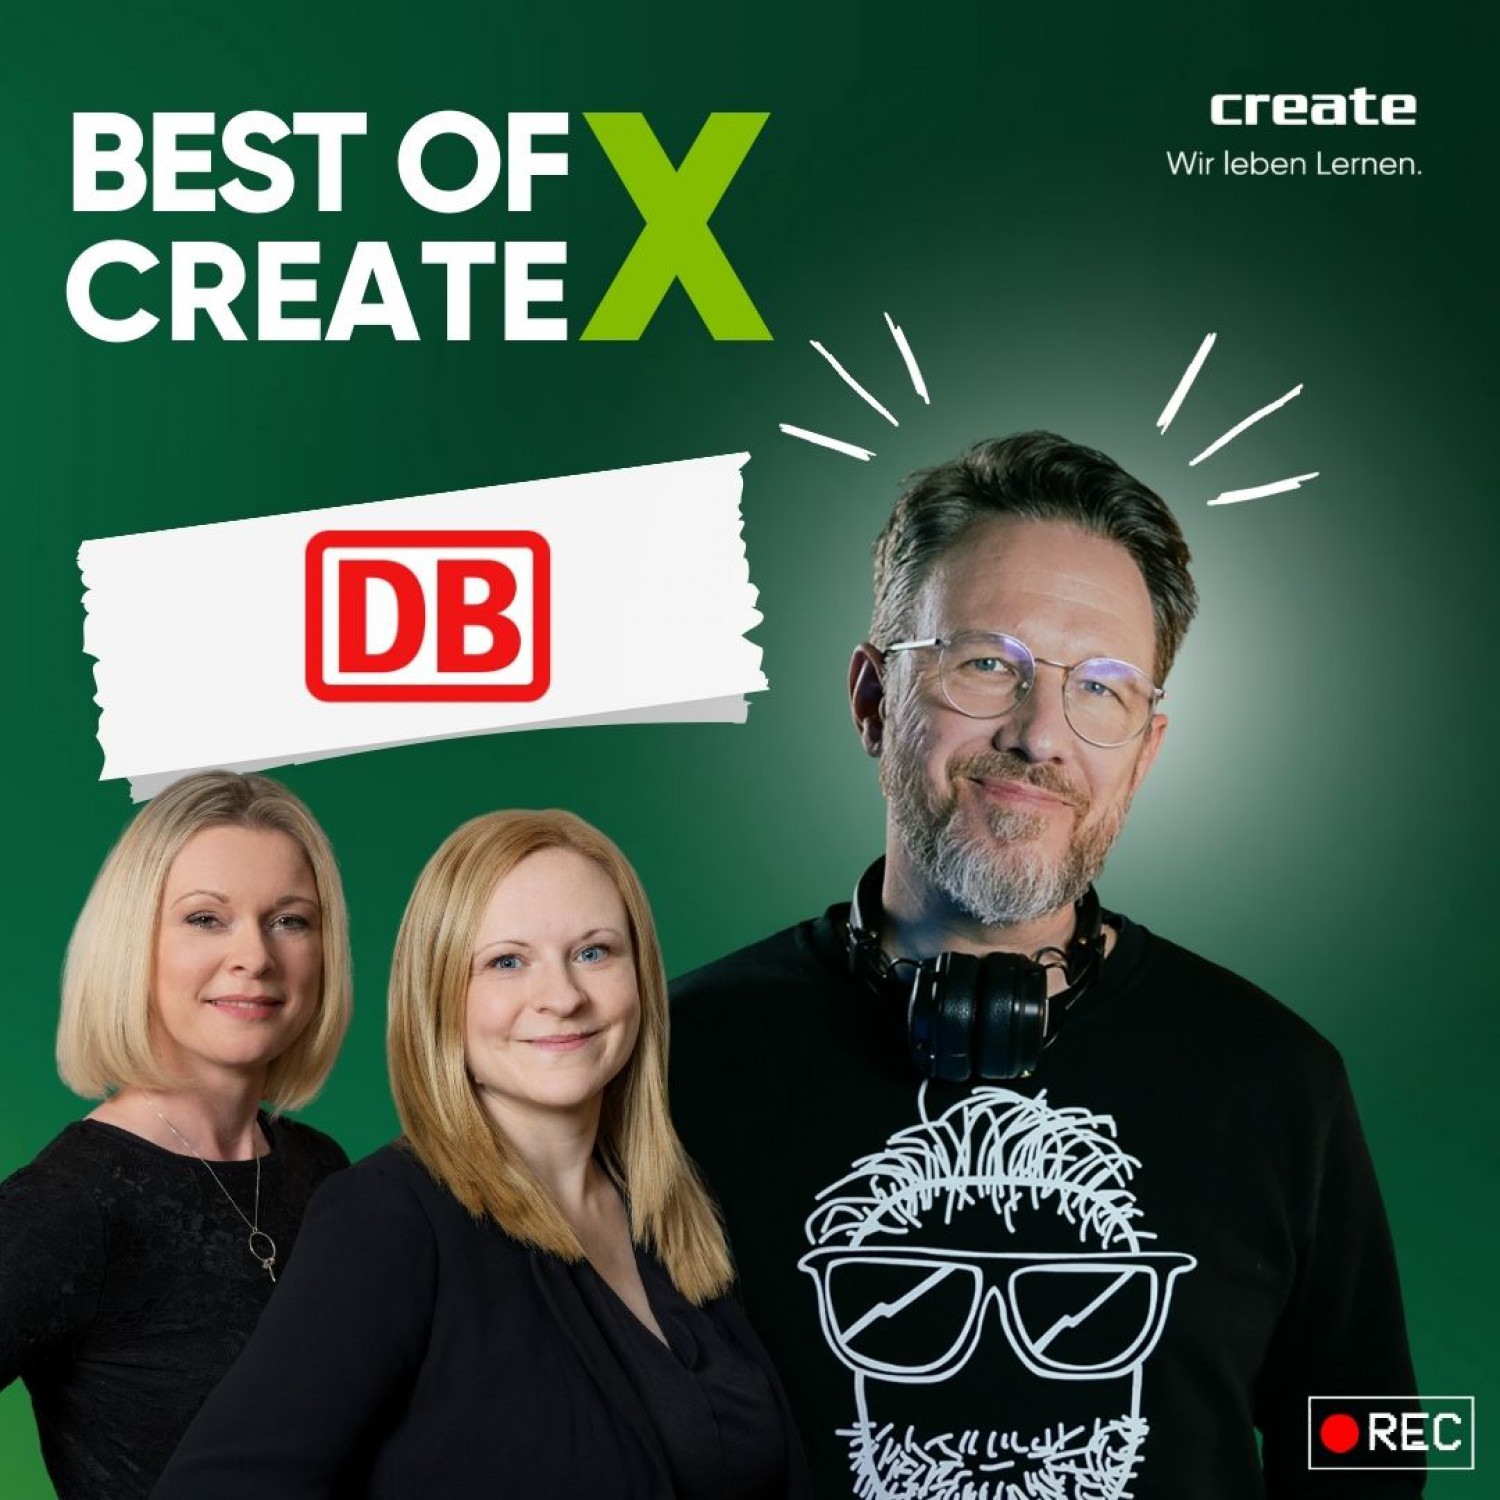 Best of CREATE X DB 1080x1080